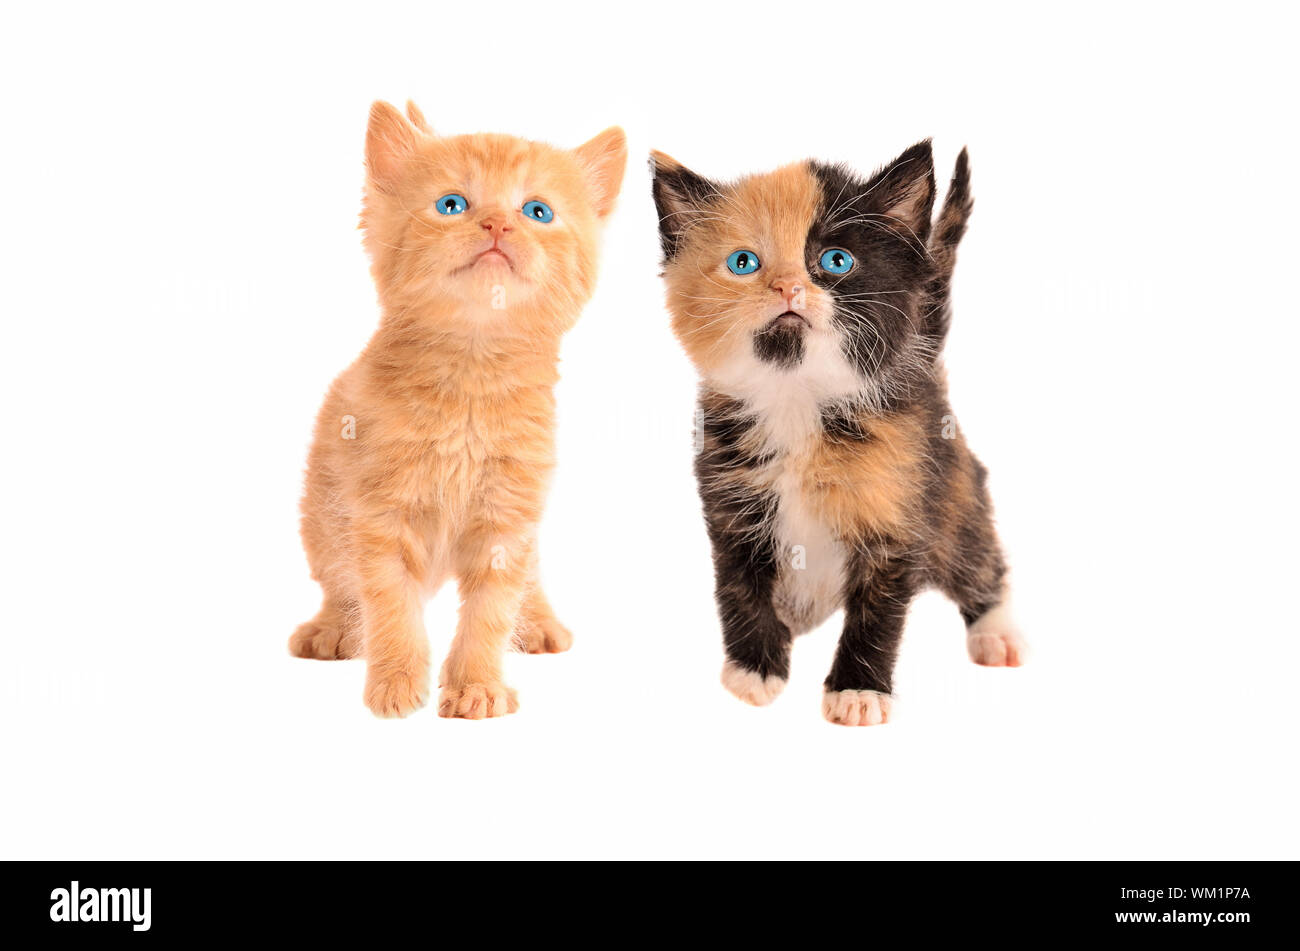 Due gattini, un calico e un'arancia tabby kitten, insieme su uno sfondo bianco Foto Stock